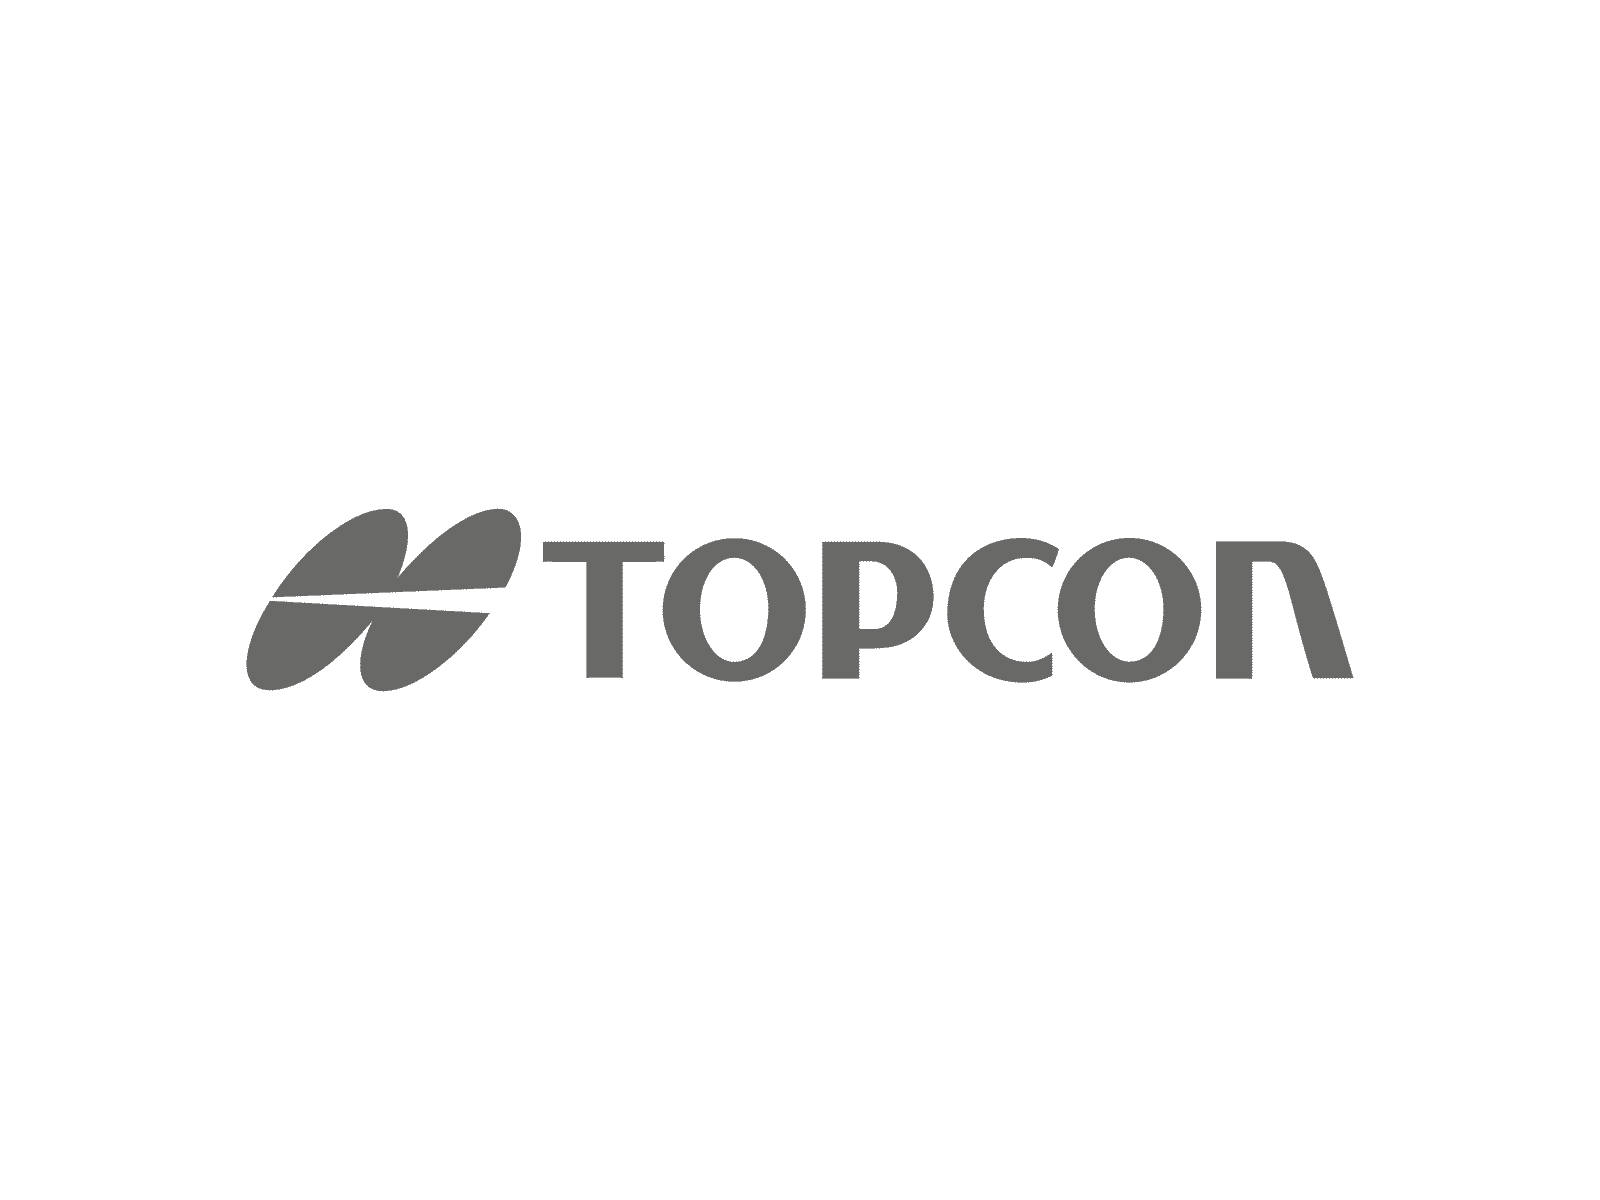 Logo Topcon